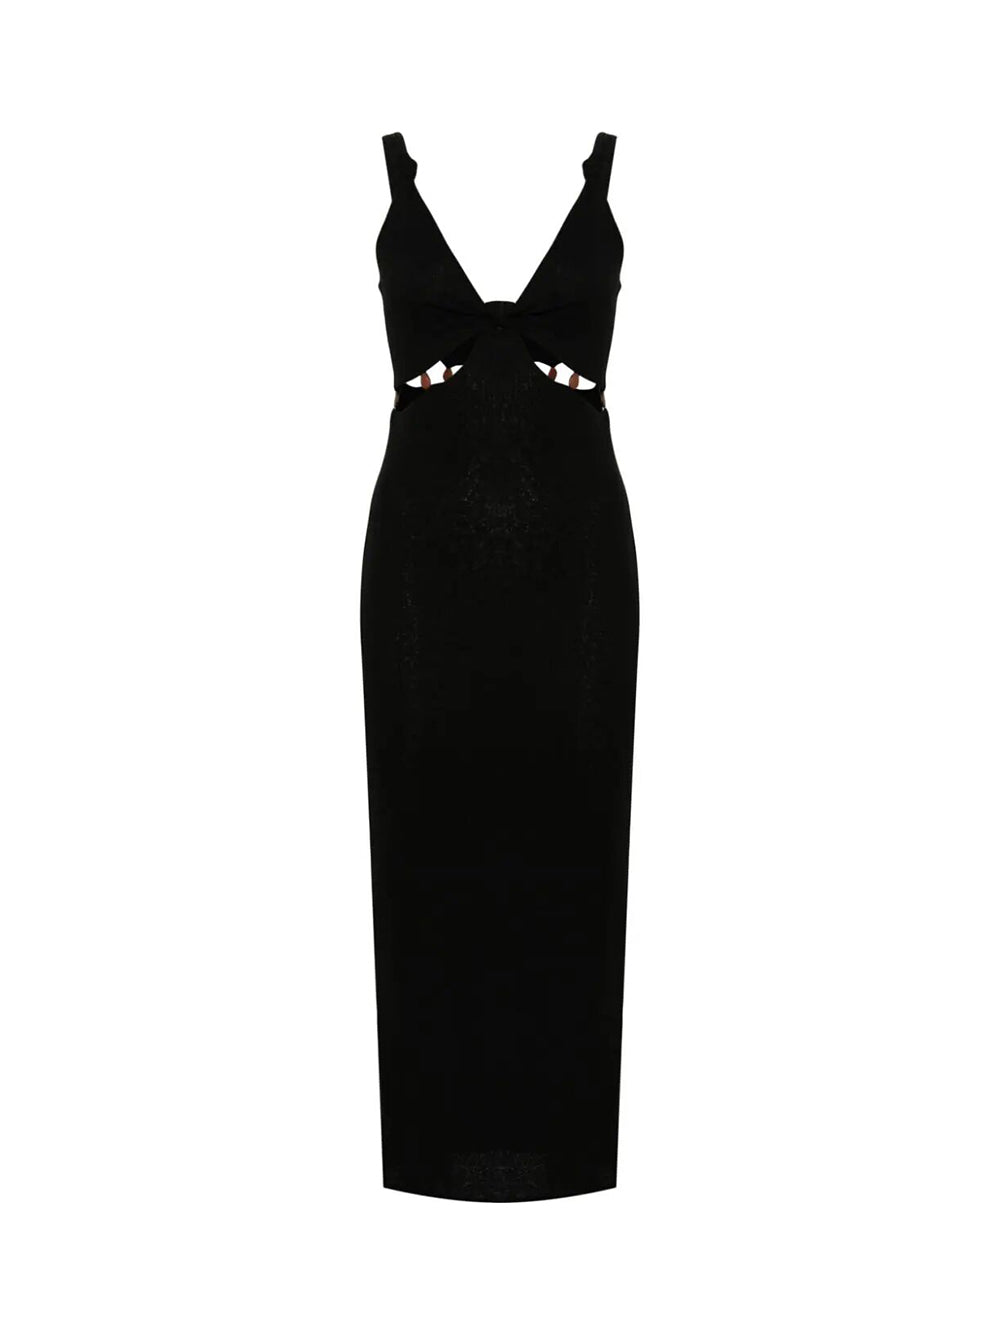 Saar black dress